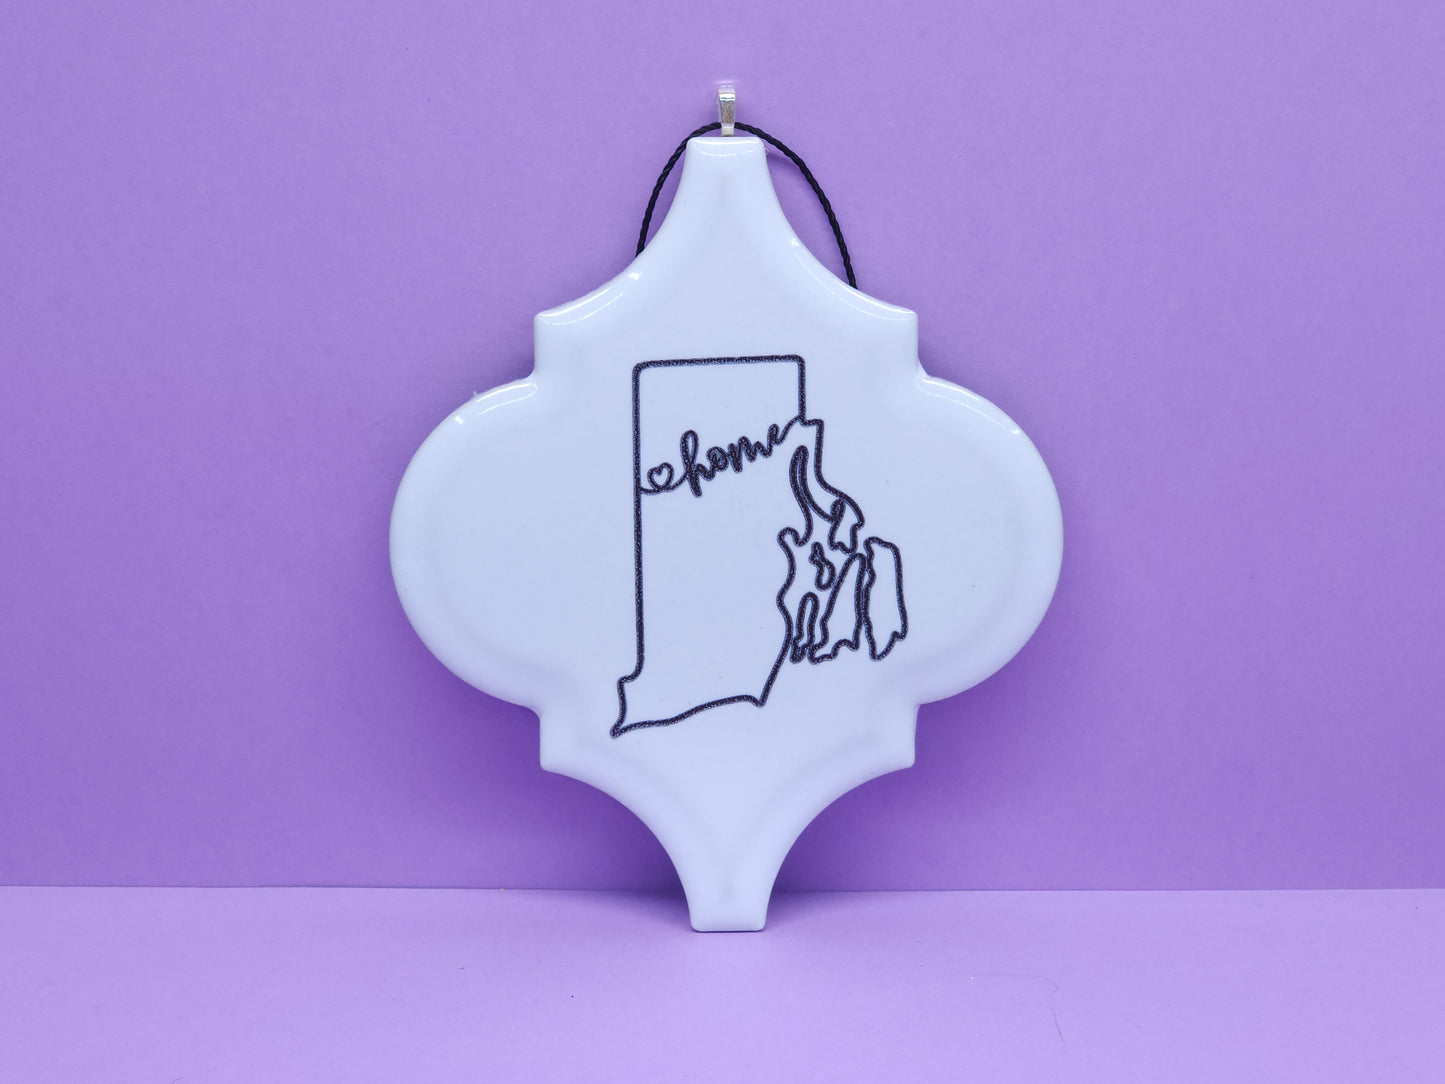 Adorno arabesco relleno de tinta "Rhode Island Home" de State Outline